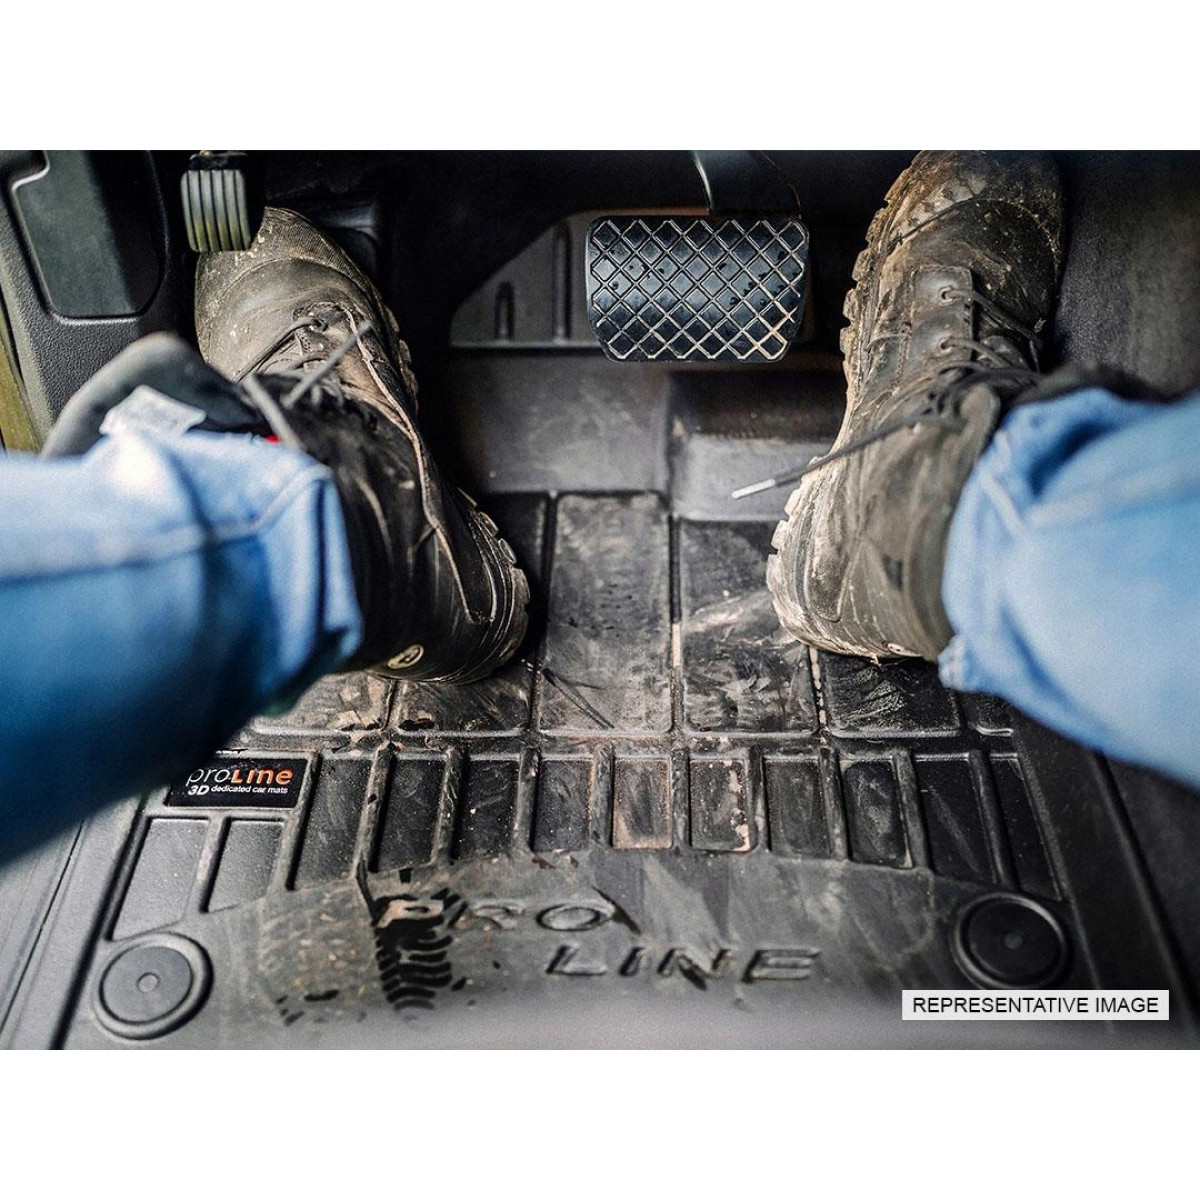 Guminiai kilimėliai Proline Mercedes Benz Vito (w447) nuo 2014m. / paaukštintais kraštais